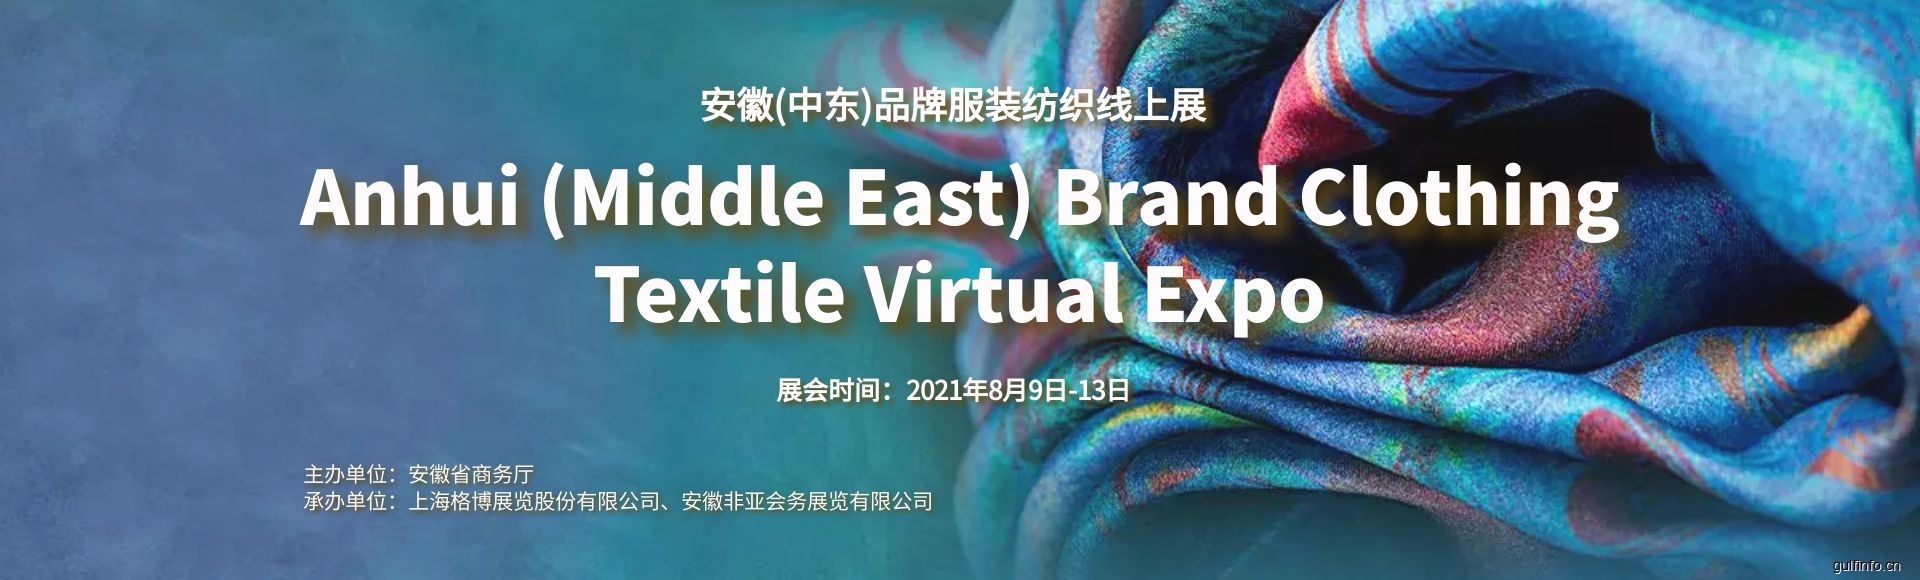 2021安徽(中东)品牌服装纺织<font color=#ff0000>线上展</font>即将启动